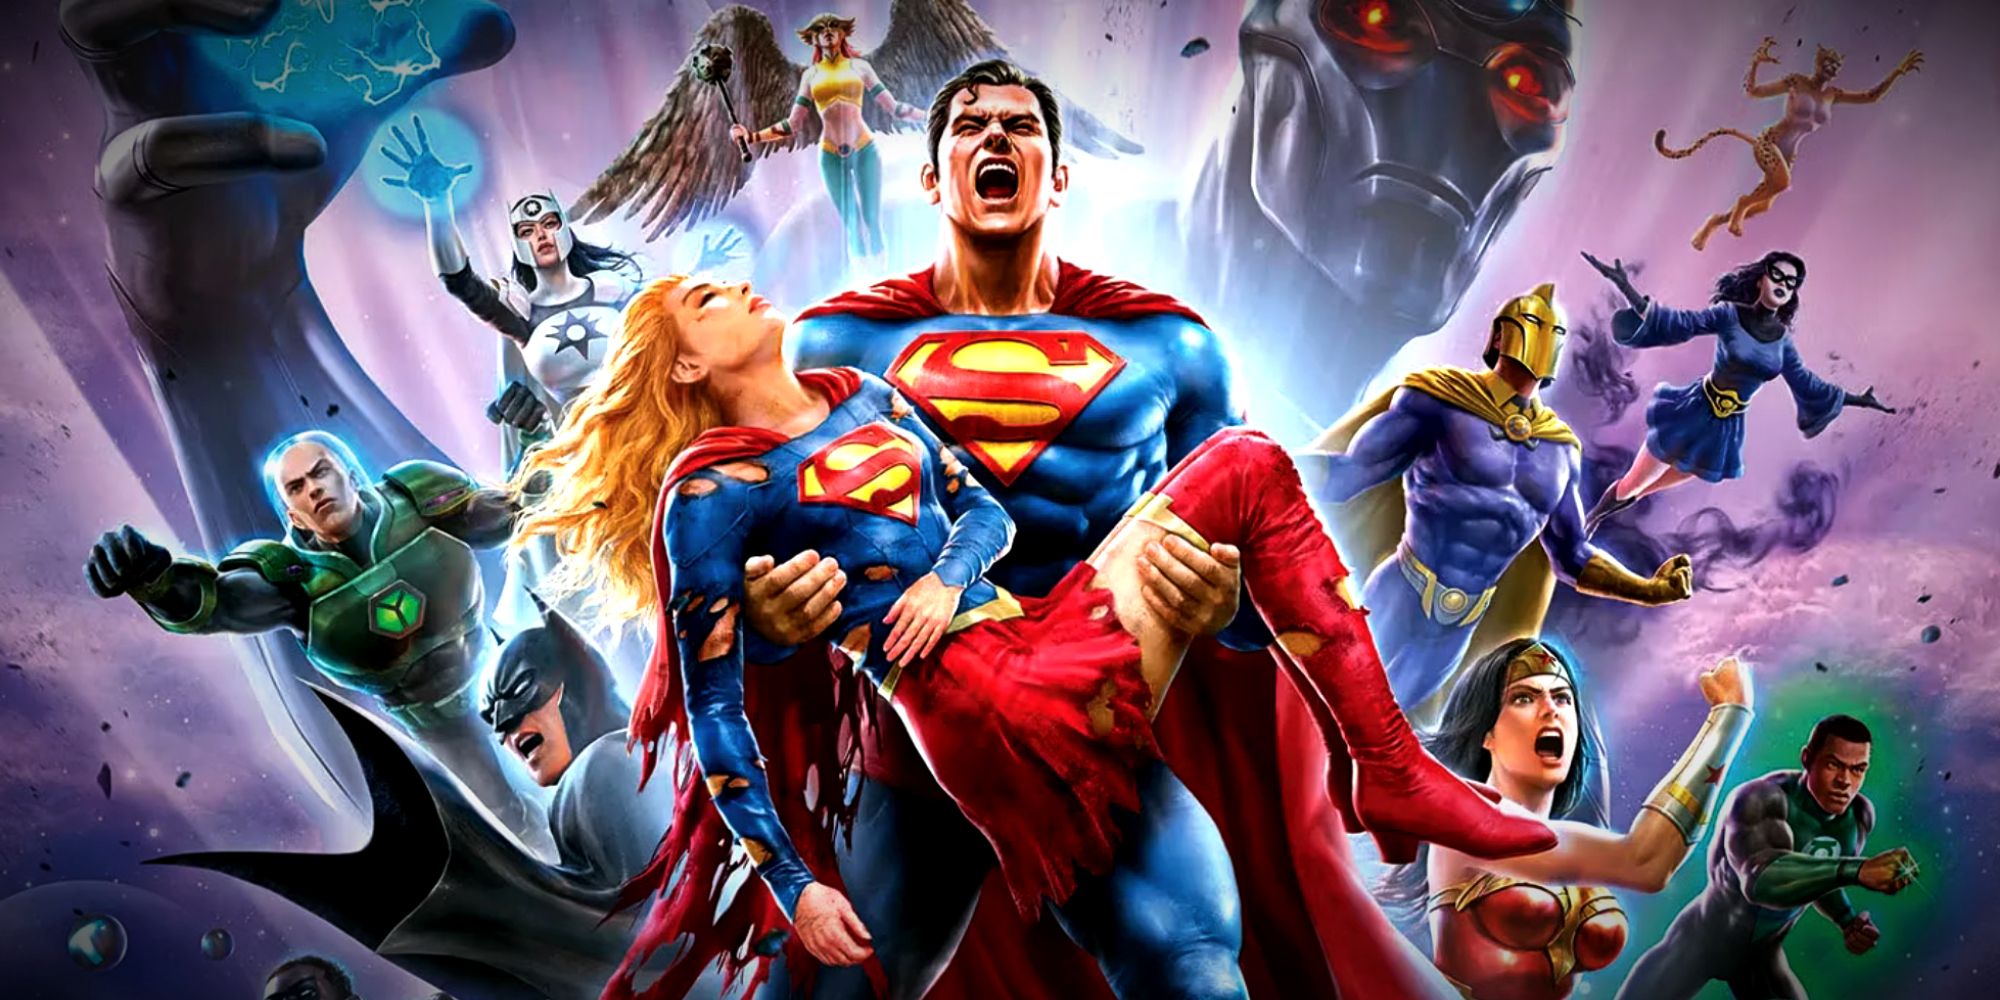 Superman sostiene a Supergirl en Crisis en Tierras Infinitas, parte 3, póster de la película animada de DC